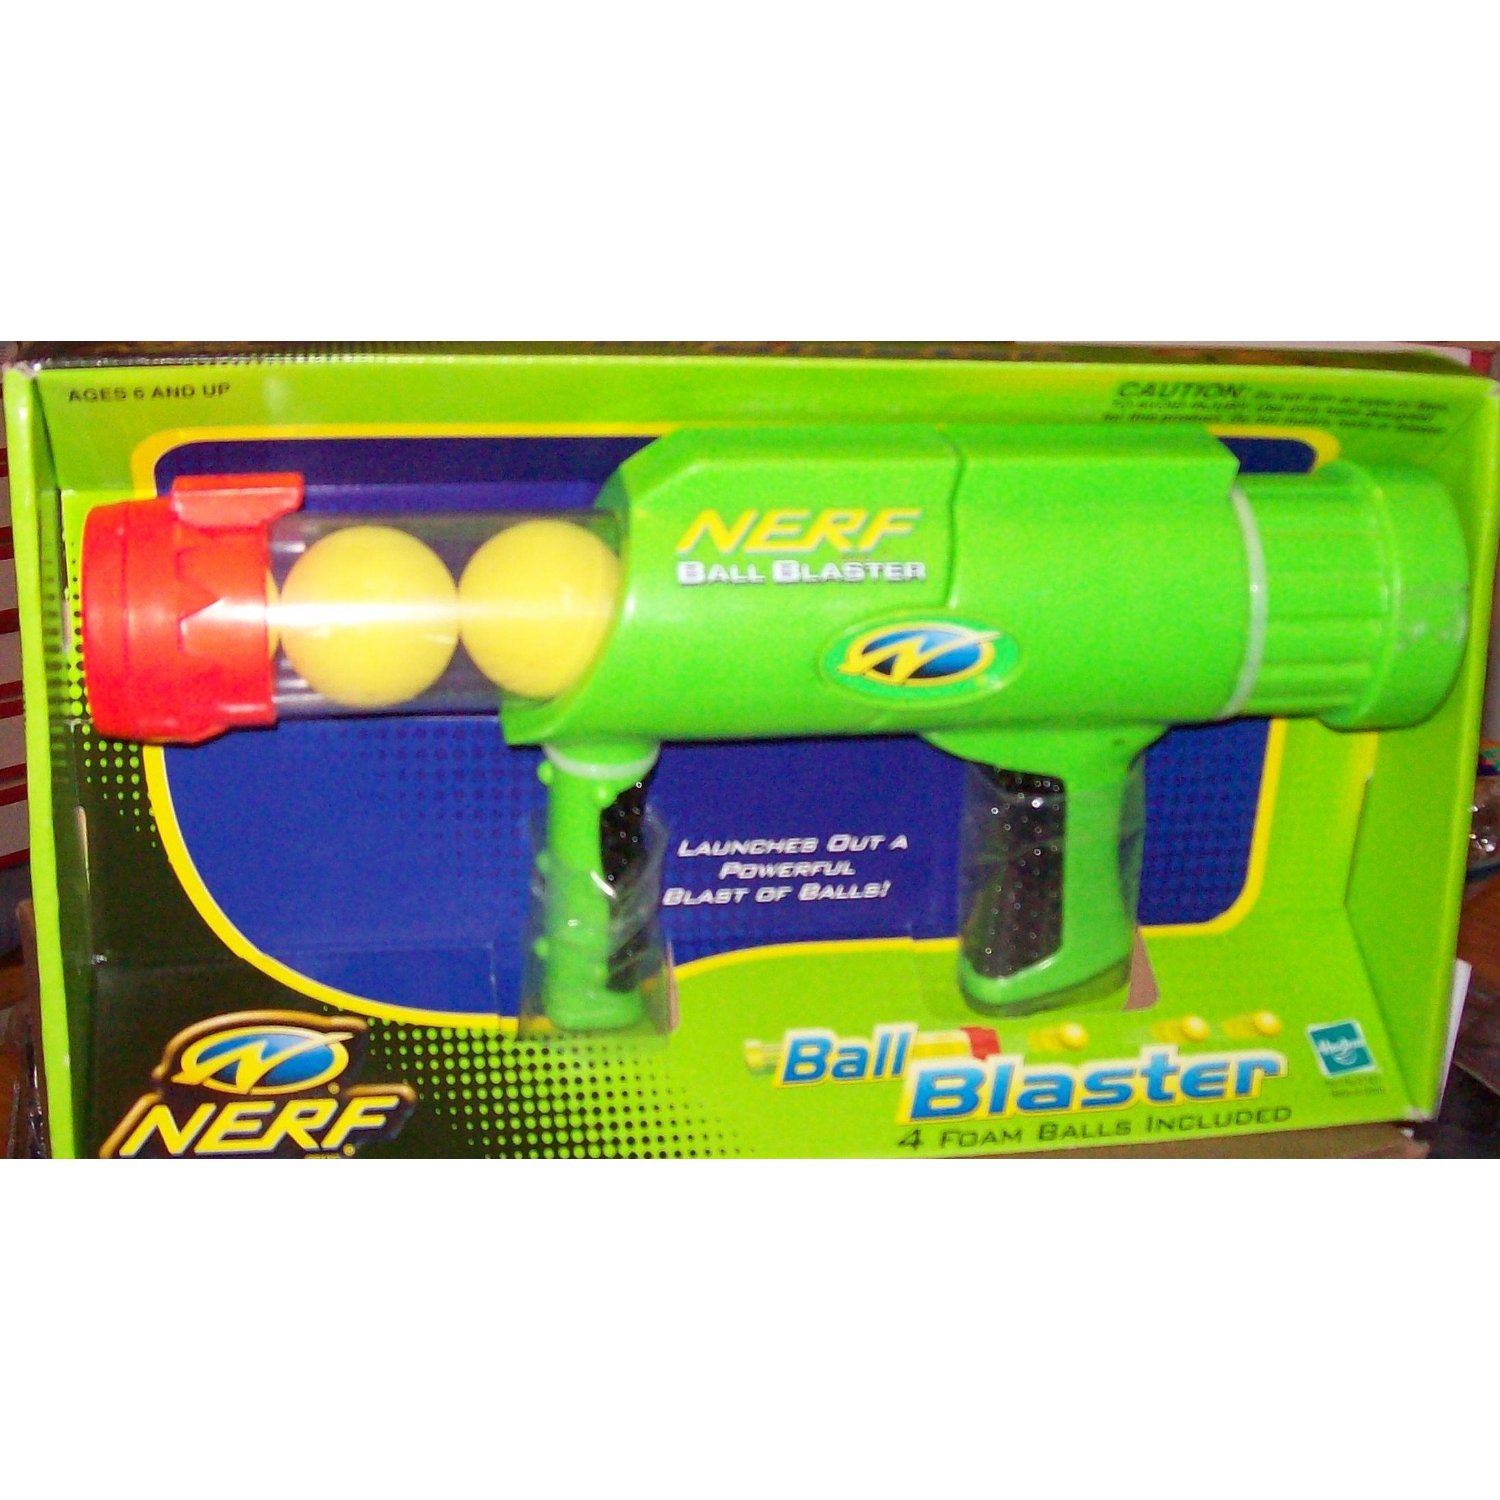 Nerf BuzzSaw Ball Shooter not dart gun - shoot those foam balls